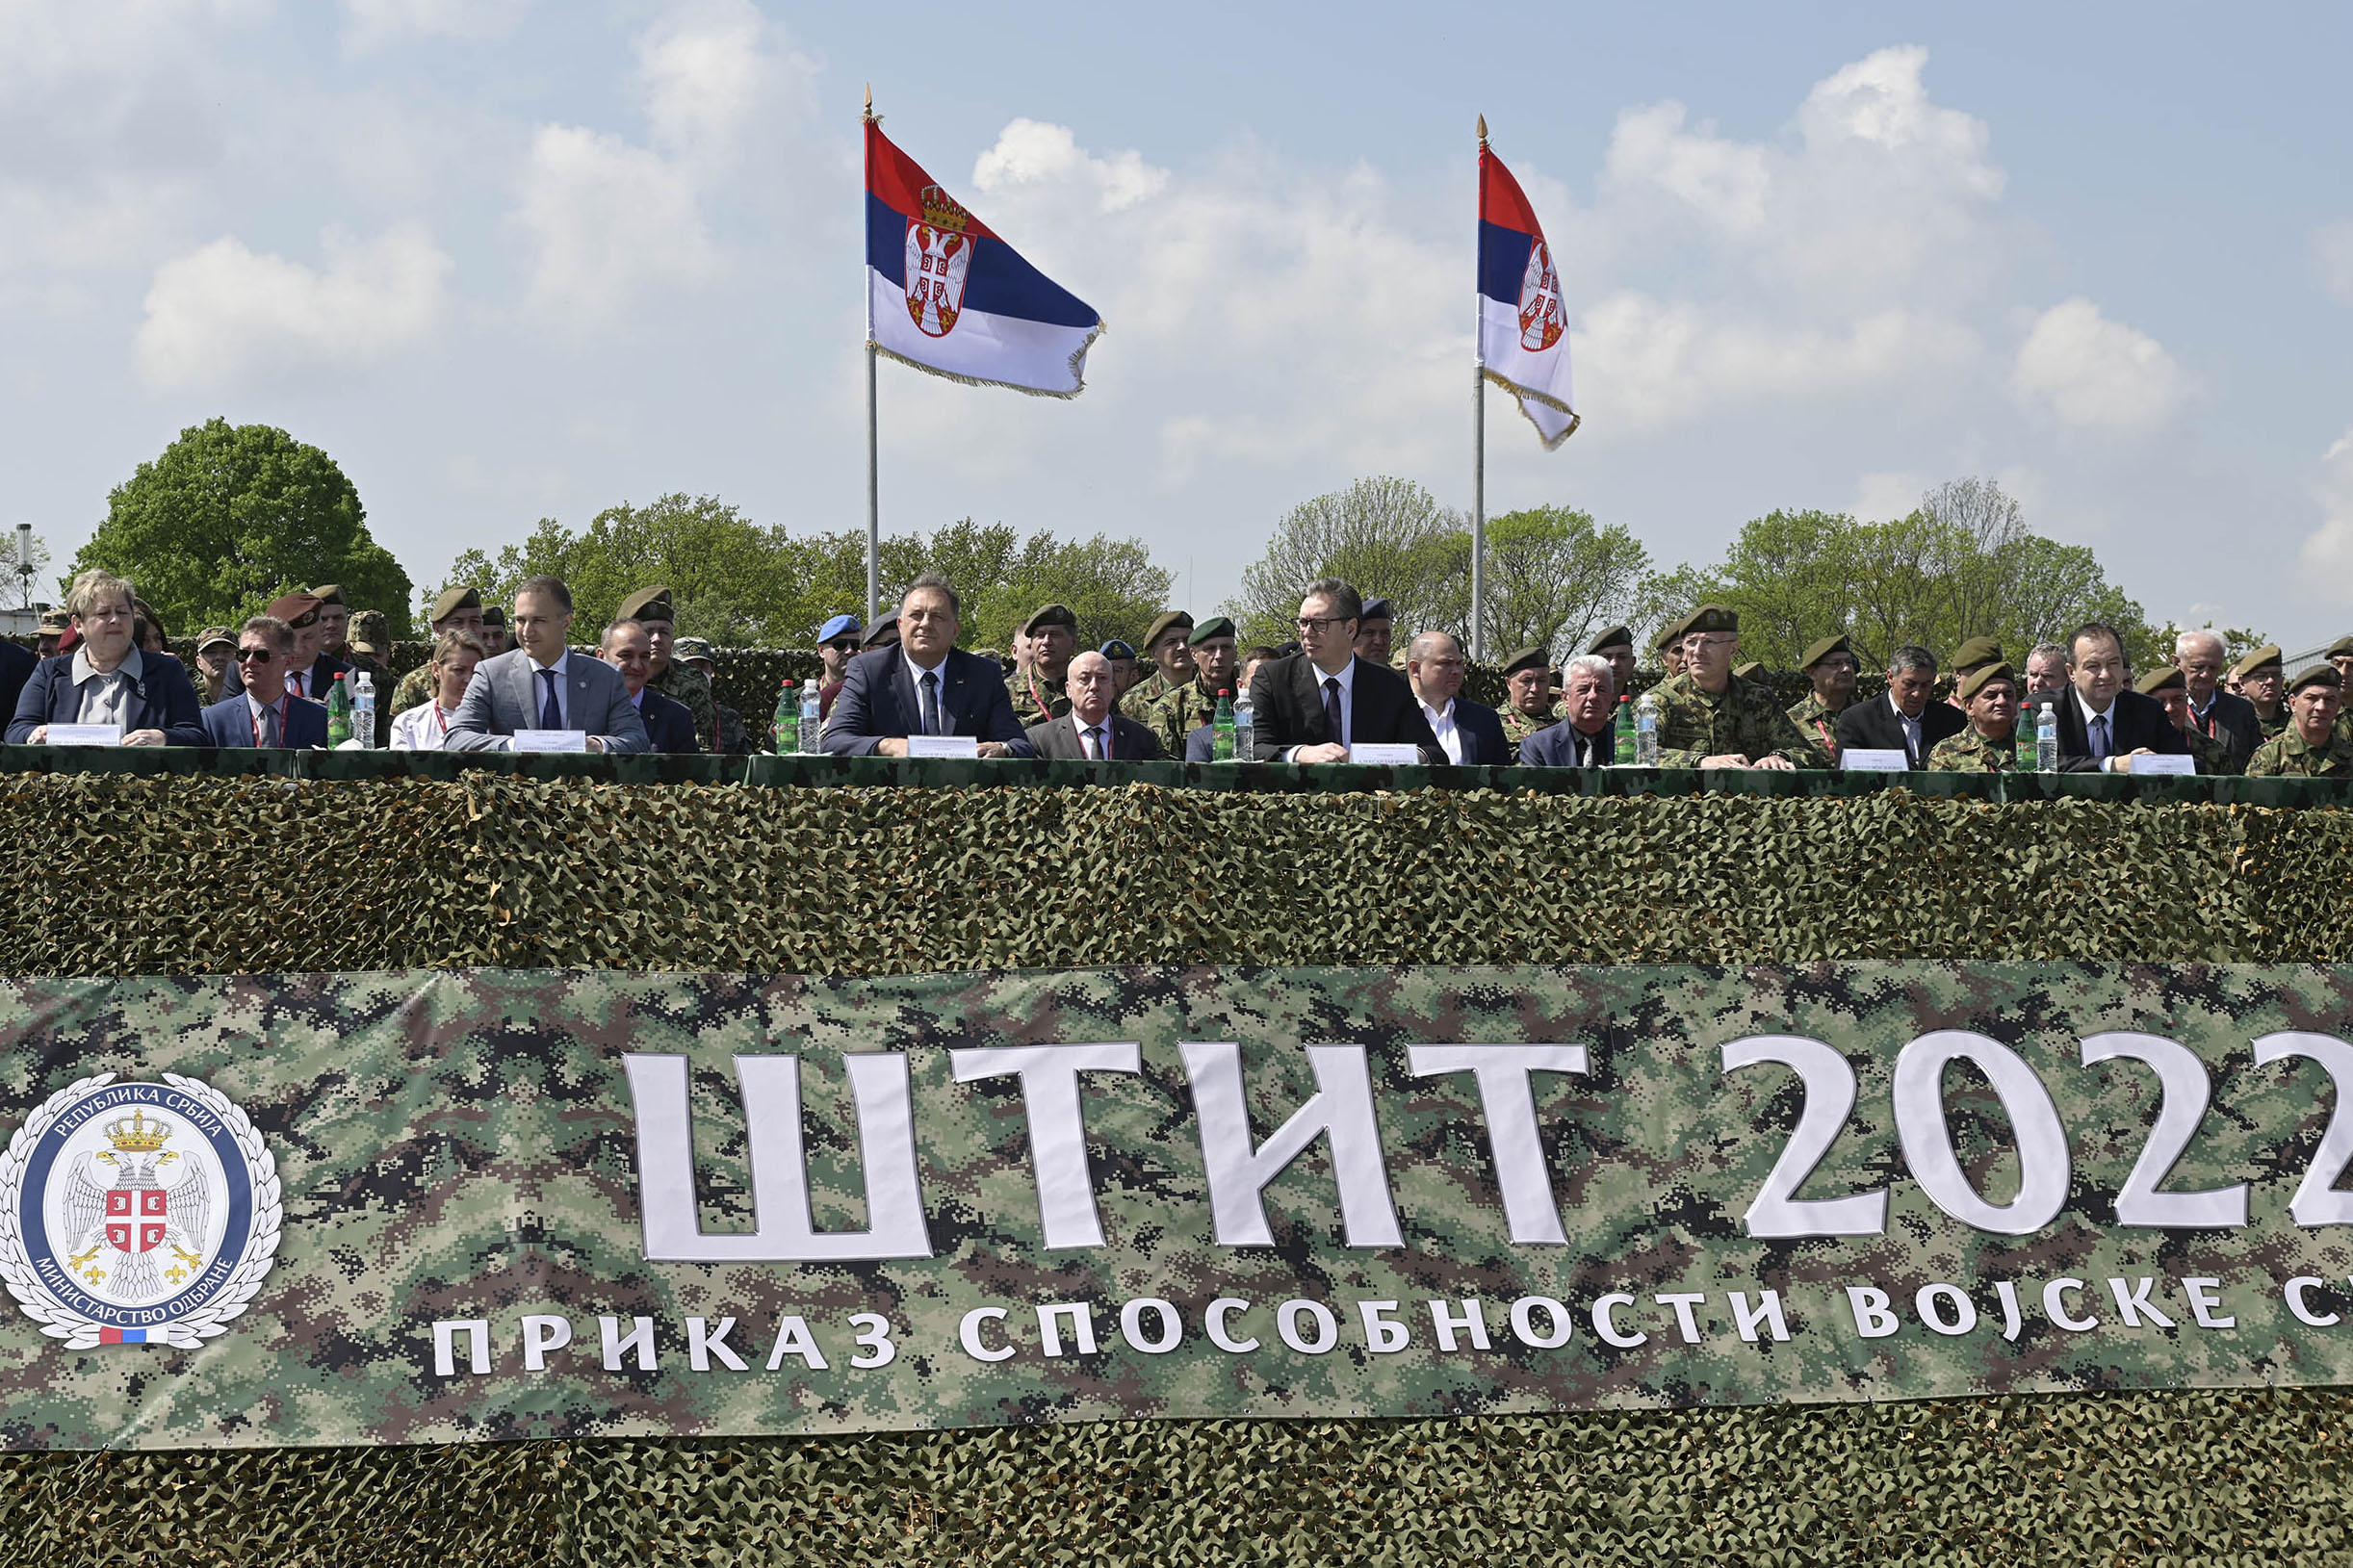 DODIK ODUŠEVLJEN "ŠTITOM 2022": Vojska Srbije može uspešno da odbrani srpski narod (FOTO)